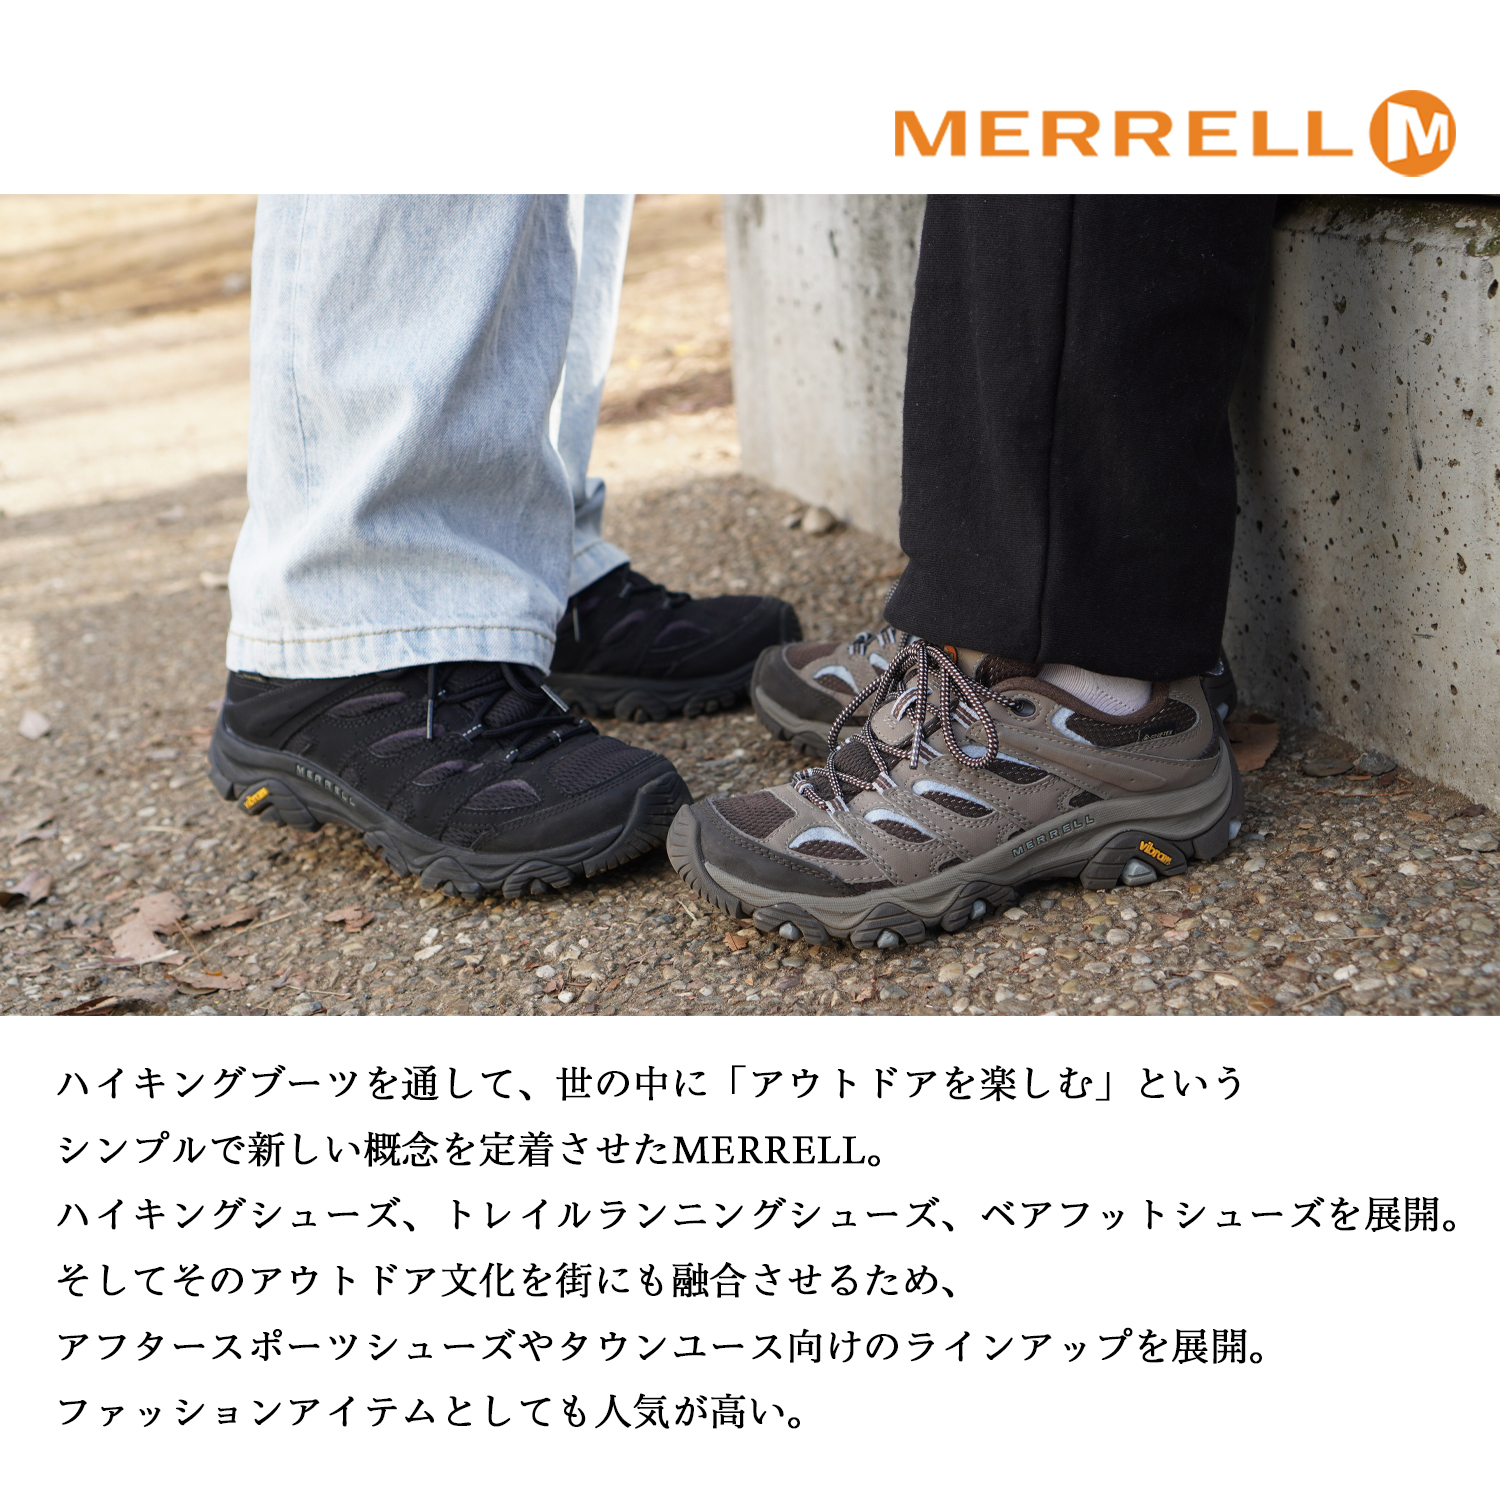 mereru обувь обувь MERRELL J036006 WRAPTlapto вода устойчивый уличный отдых GRANITE WOMENS